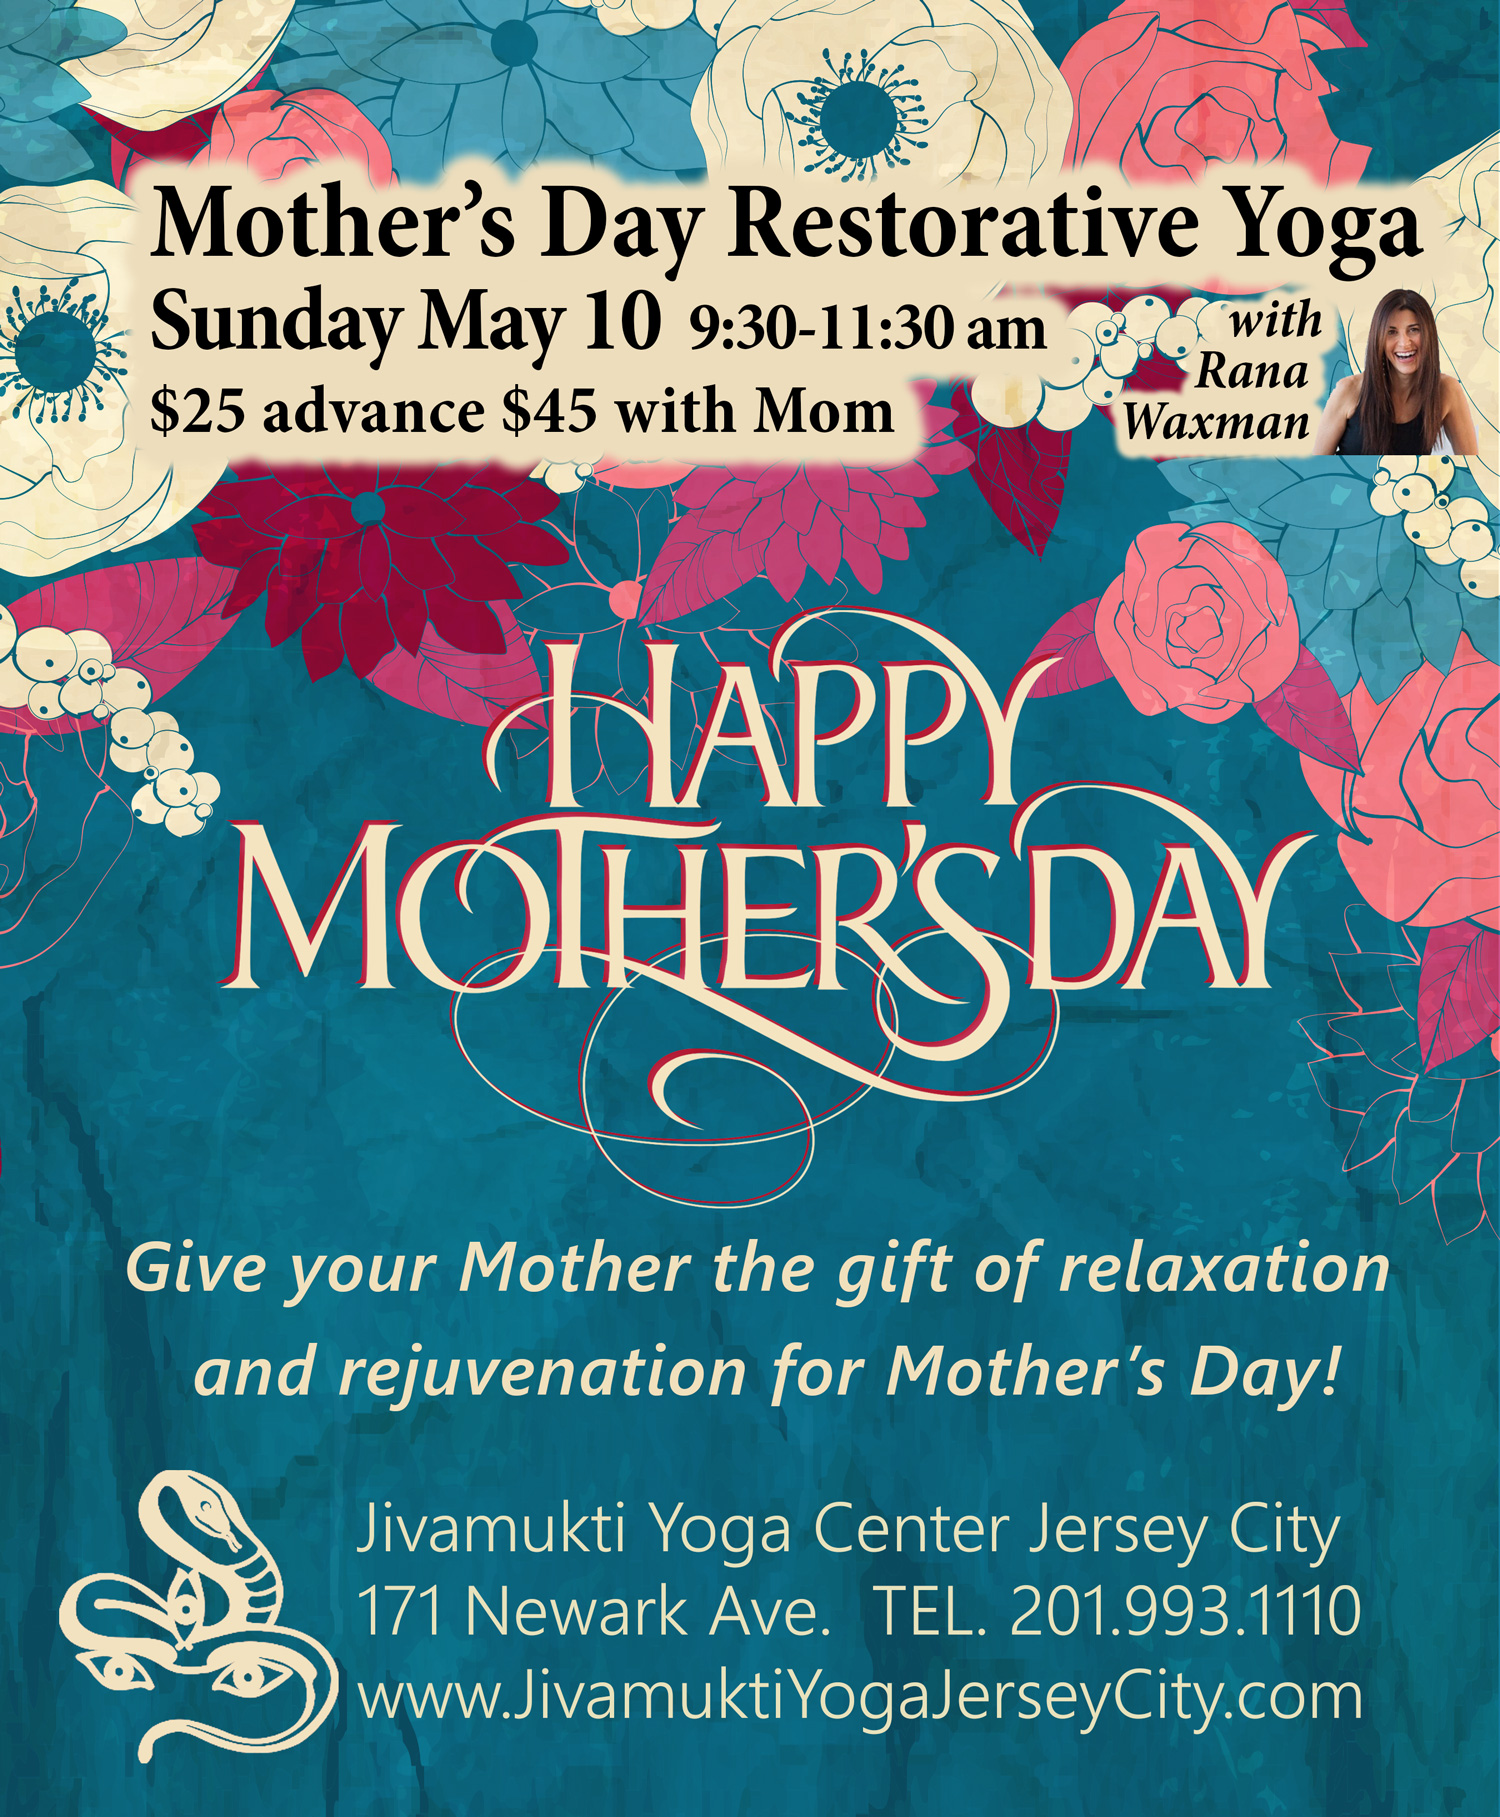 Mother's Day Restorative Yoga Workshop